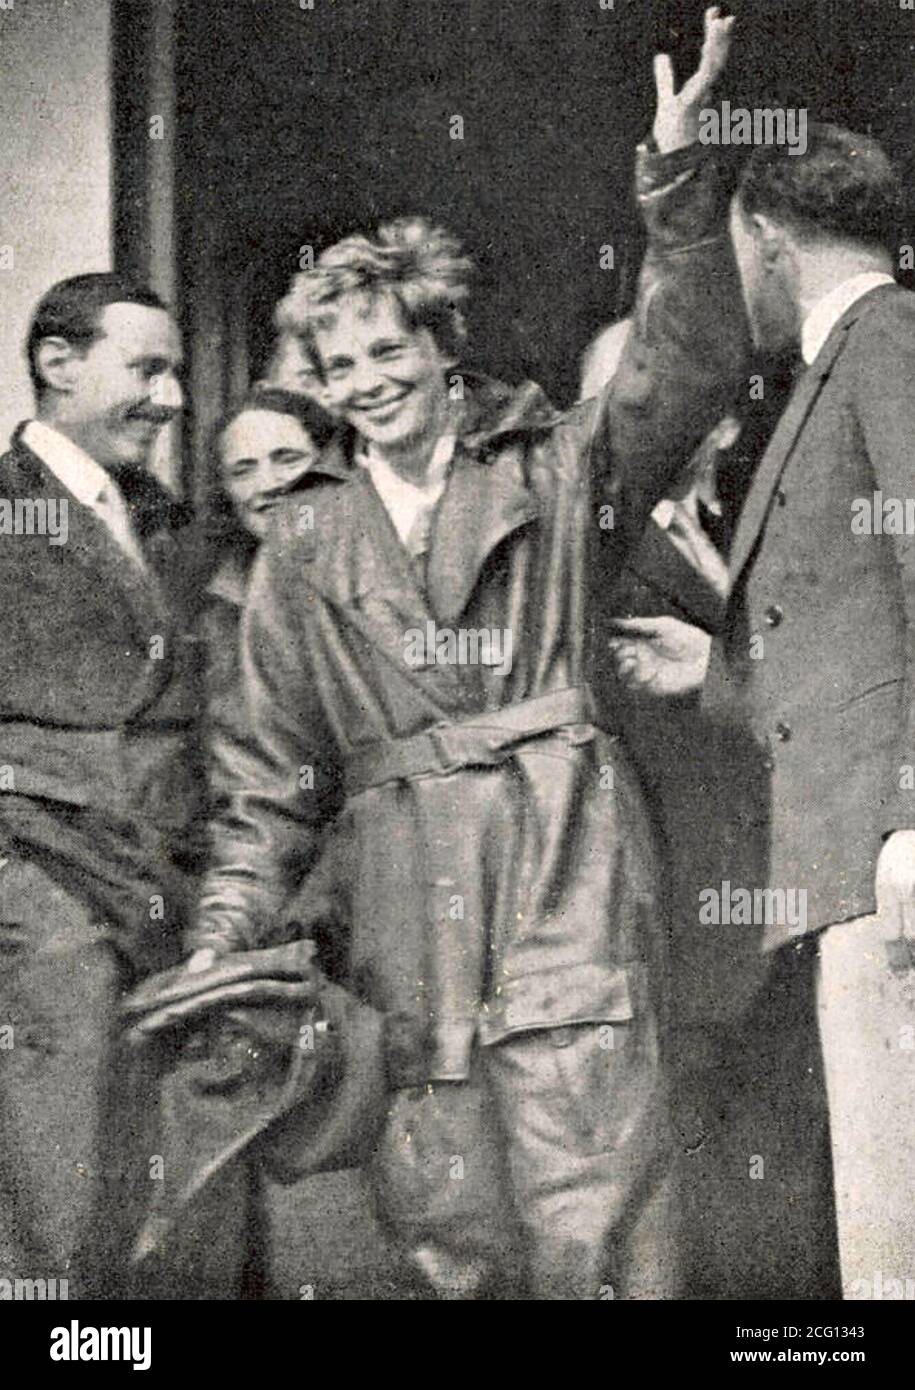 AMELIA EARHART (1897-1937) pilote pionnier américain à Southampton, en Angleterre, après son vol transatlantique en juin 1928 Banque D'Images